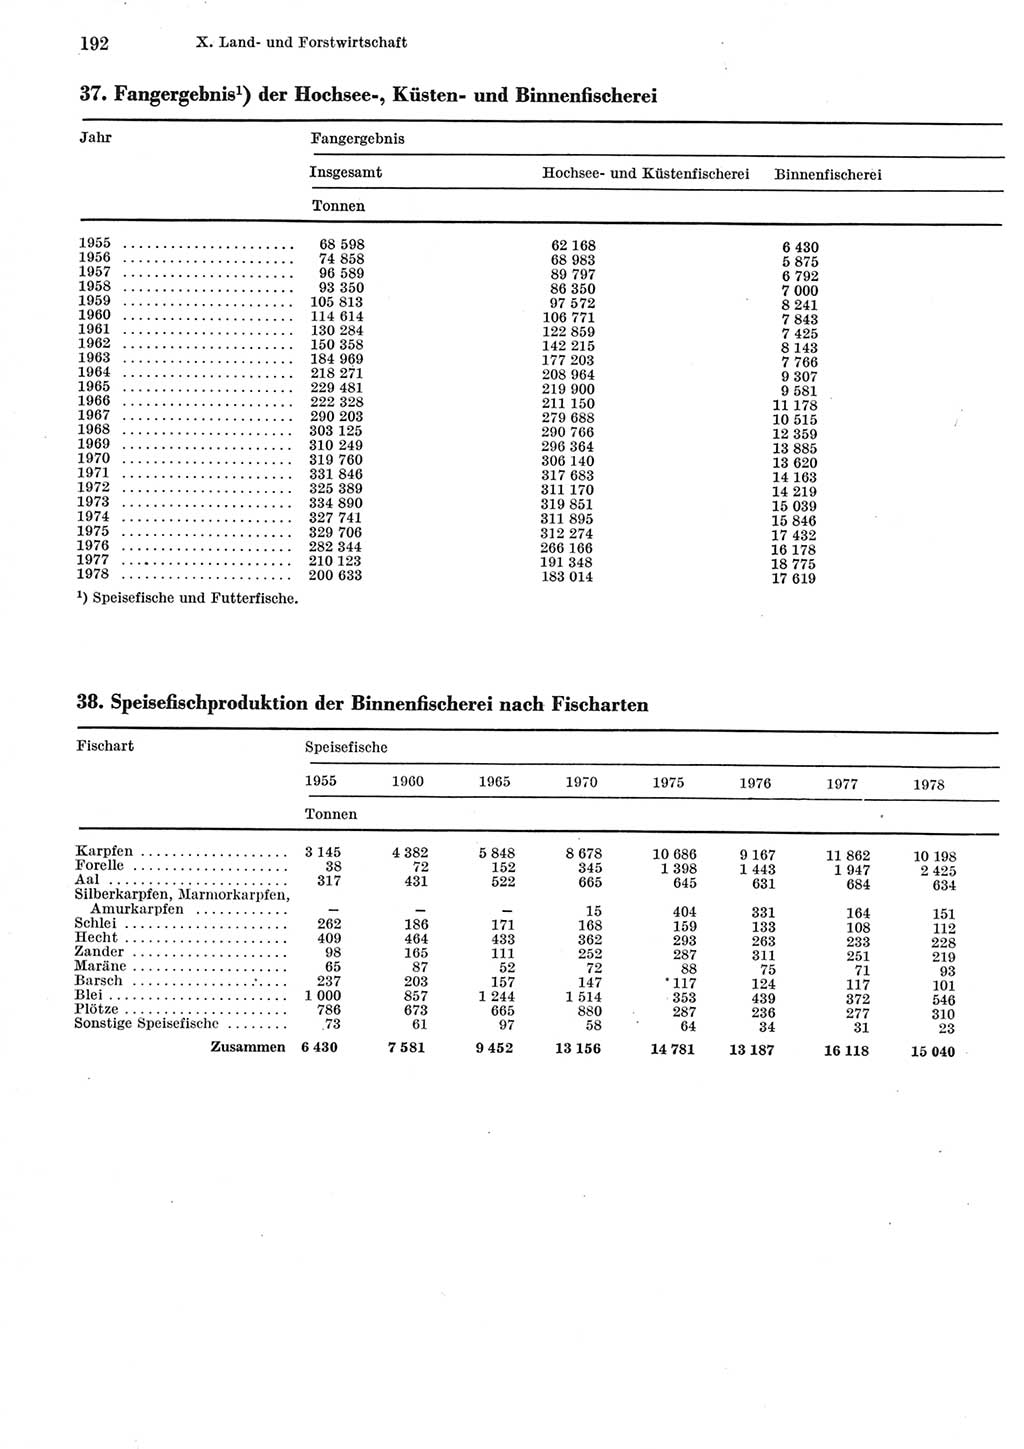 Statistisches Jahrbuch der Deutschen Demokratischen Republik (DDR) 1979, Seite 192 (Stat. Jb. DDR 1979, S. 192)